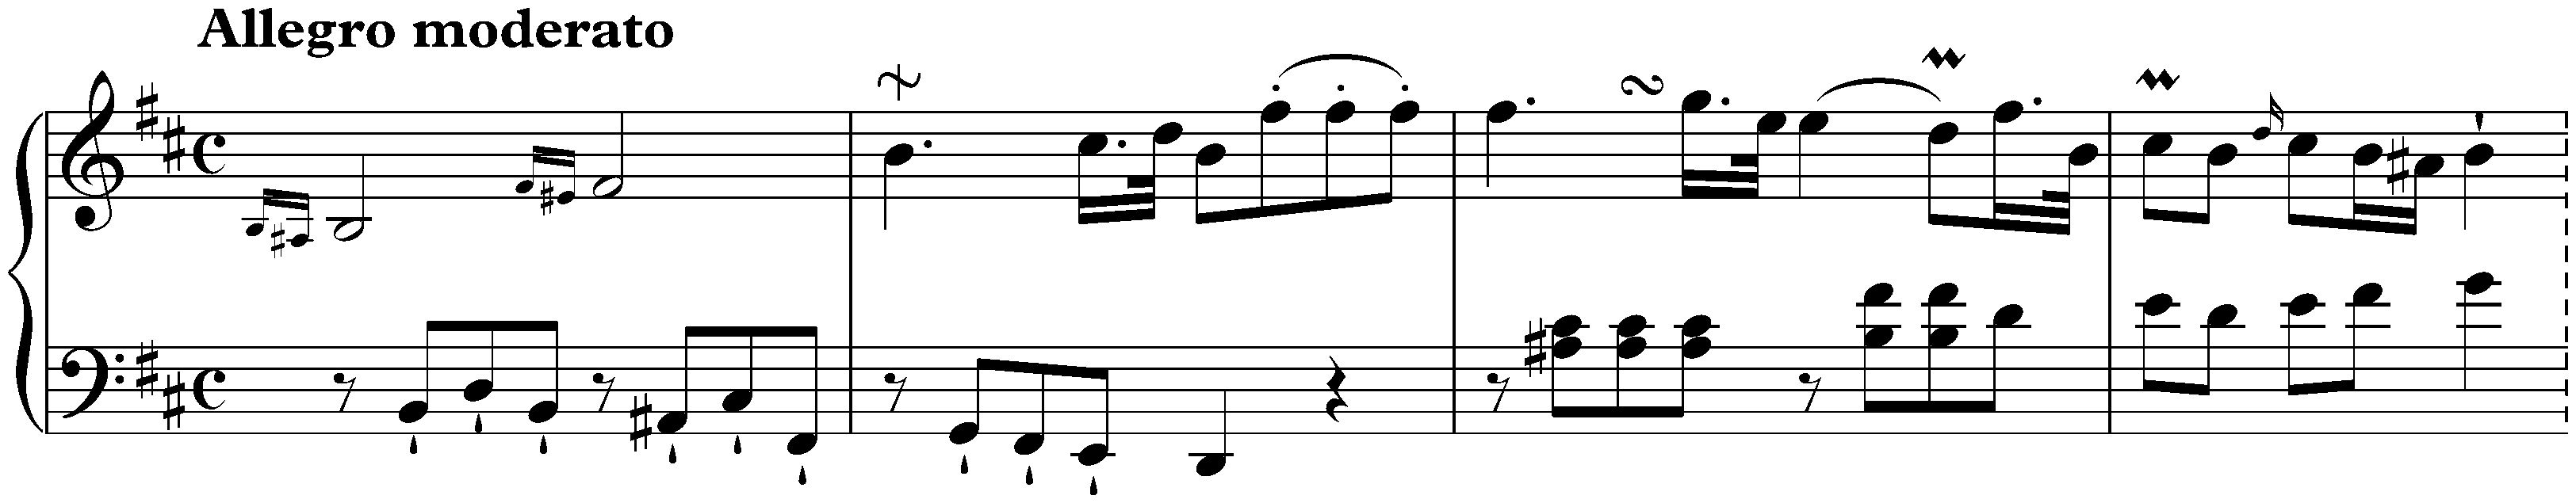 Sonata in B minor, Hob. XVI:32; 1. Allegro moderato